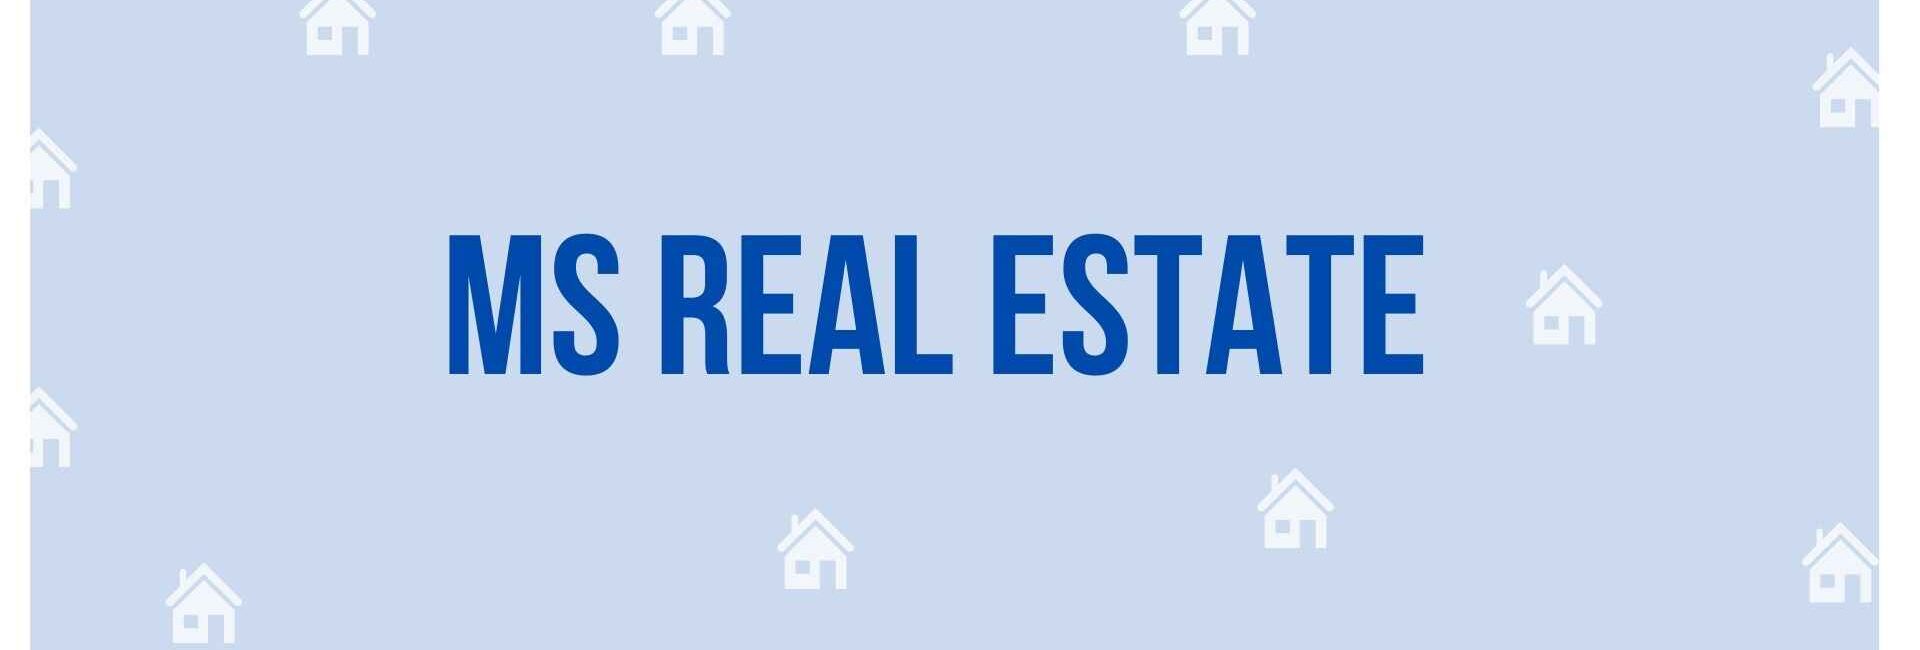 MS Real Estate - Property Dealer in Noida